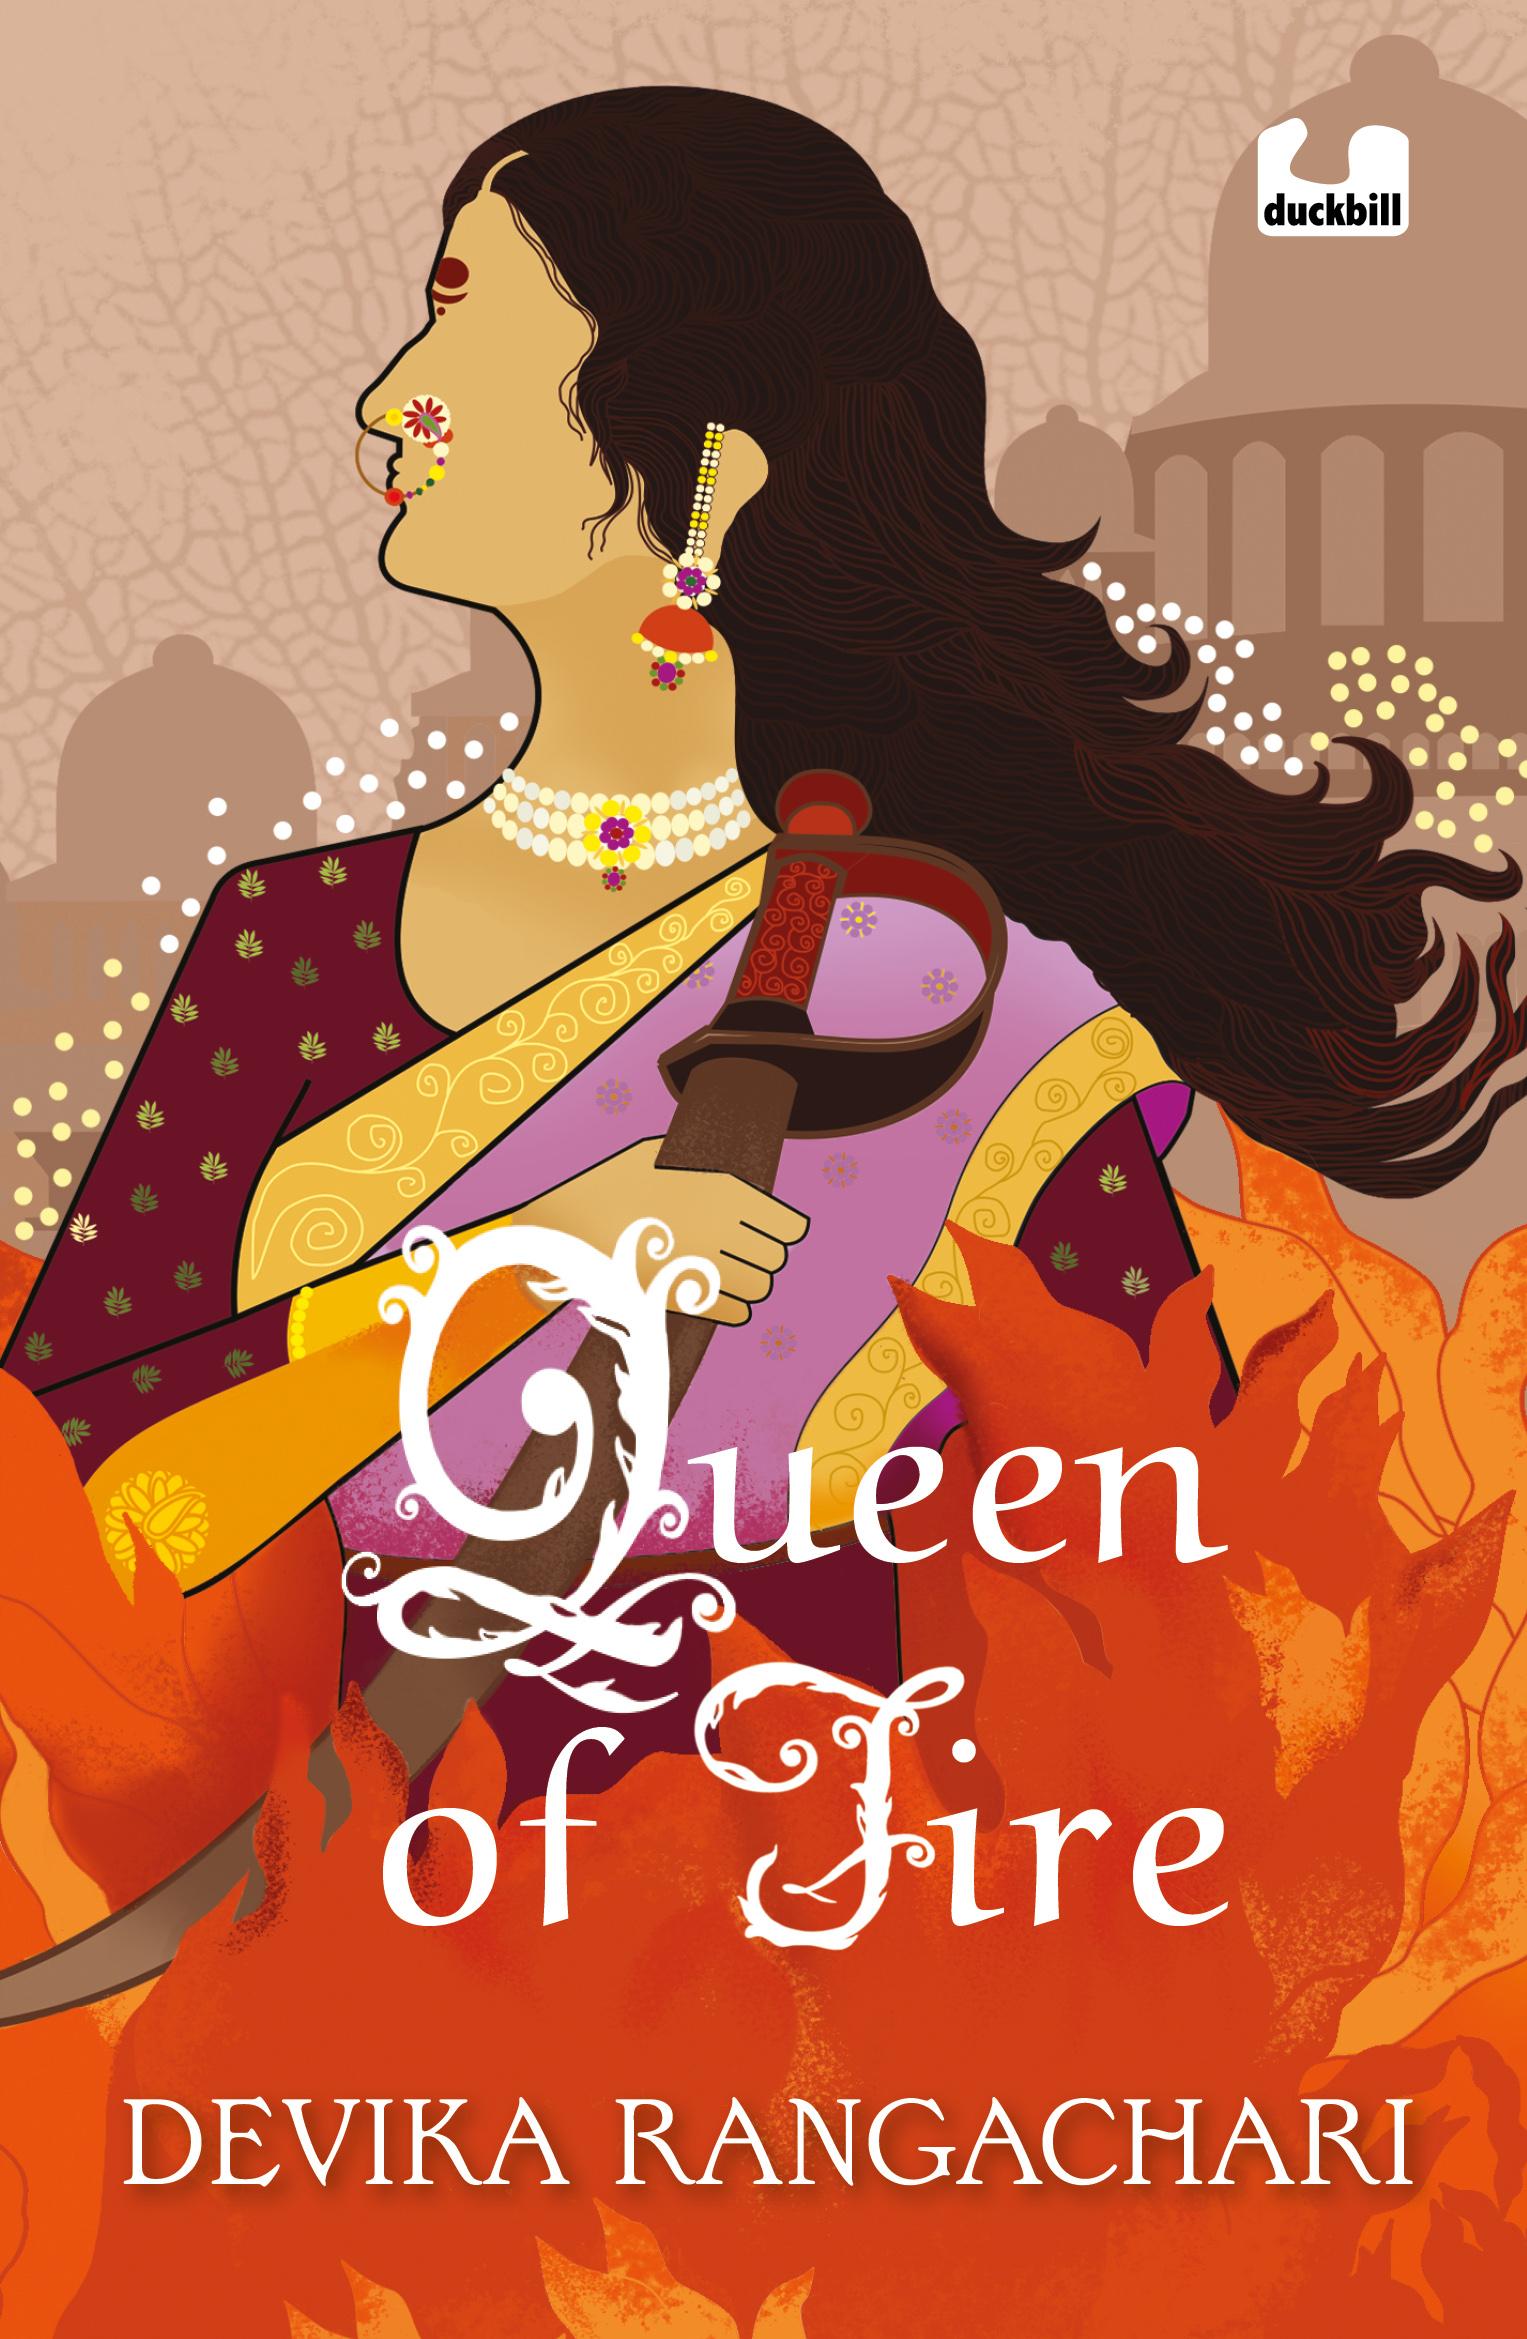 Queen of fire